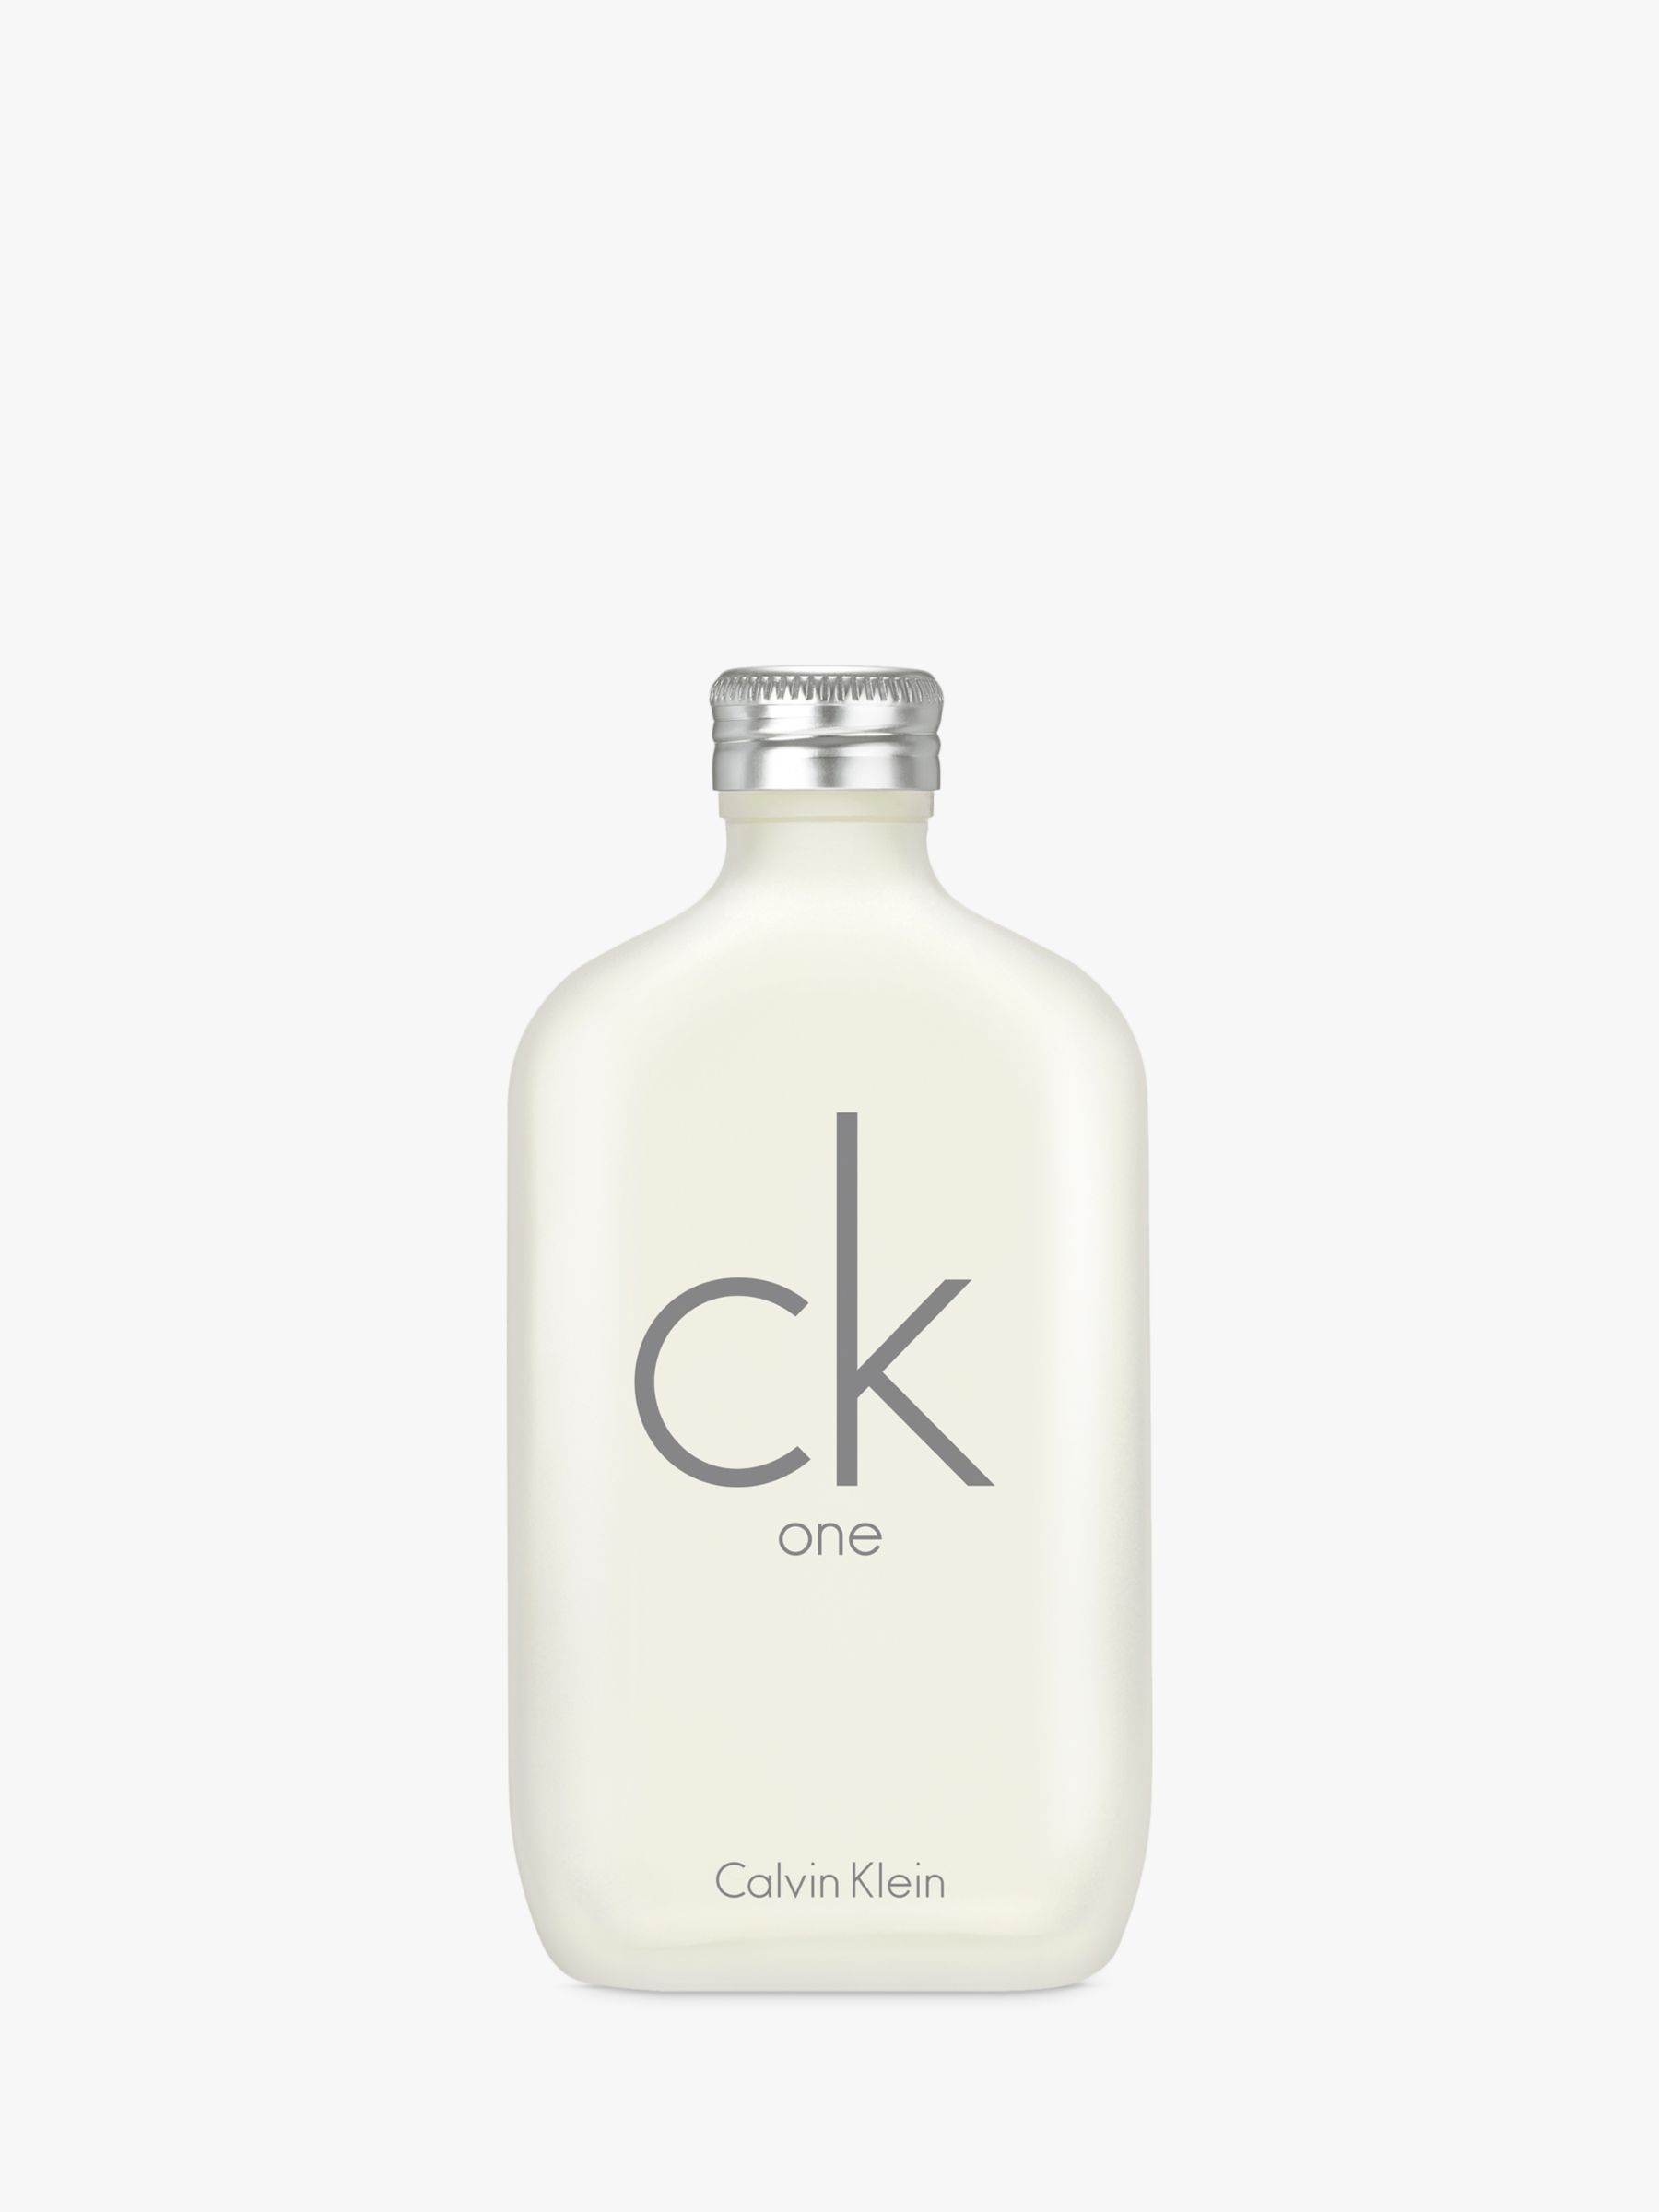 Calvin Klein CK One Eau de Toilette, 200ml at John Lewis & Partners